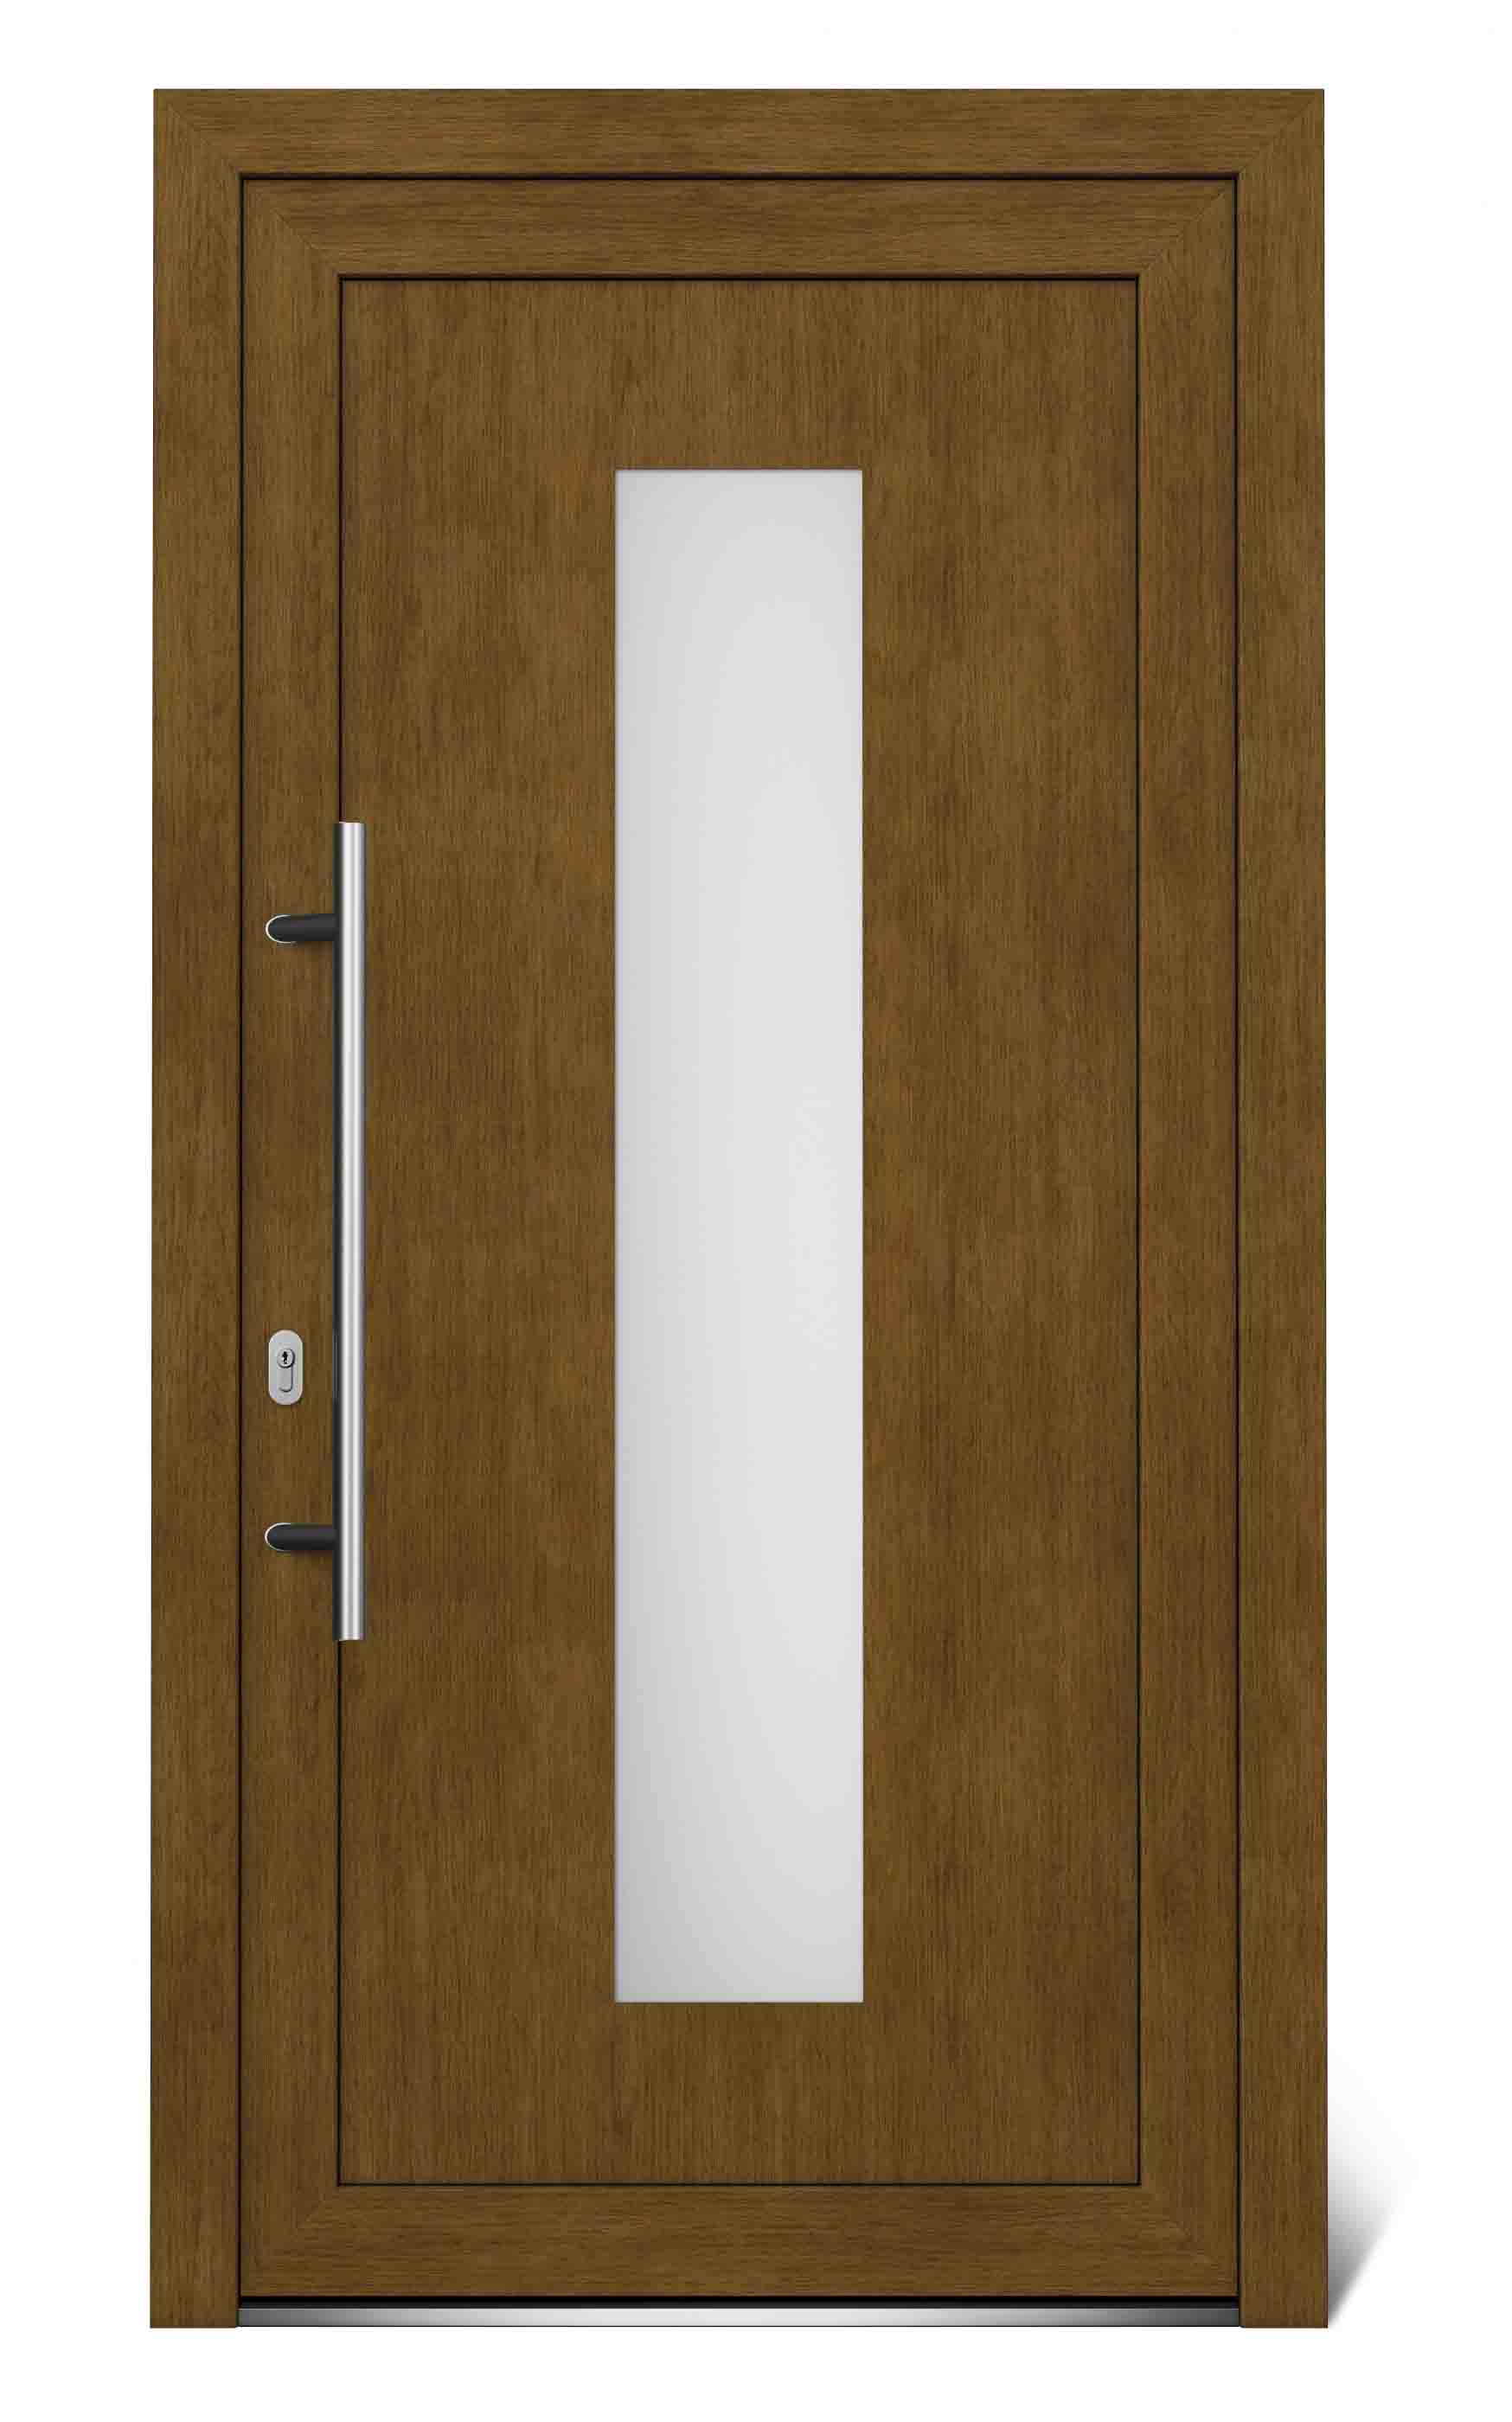 Hlavné vchodové dvere EkoLine lavé - SKLADOVÉ-OKNÁ.sk - 1044 x 2020.